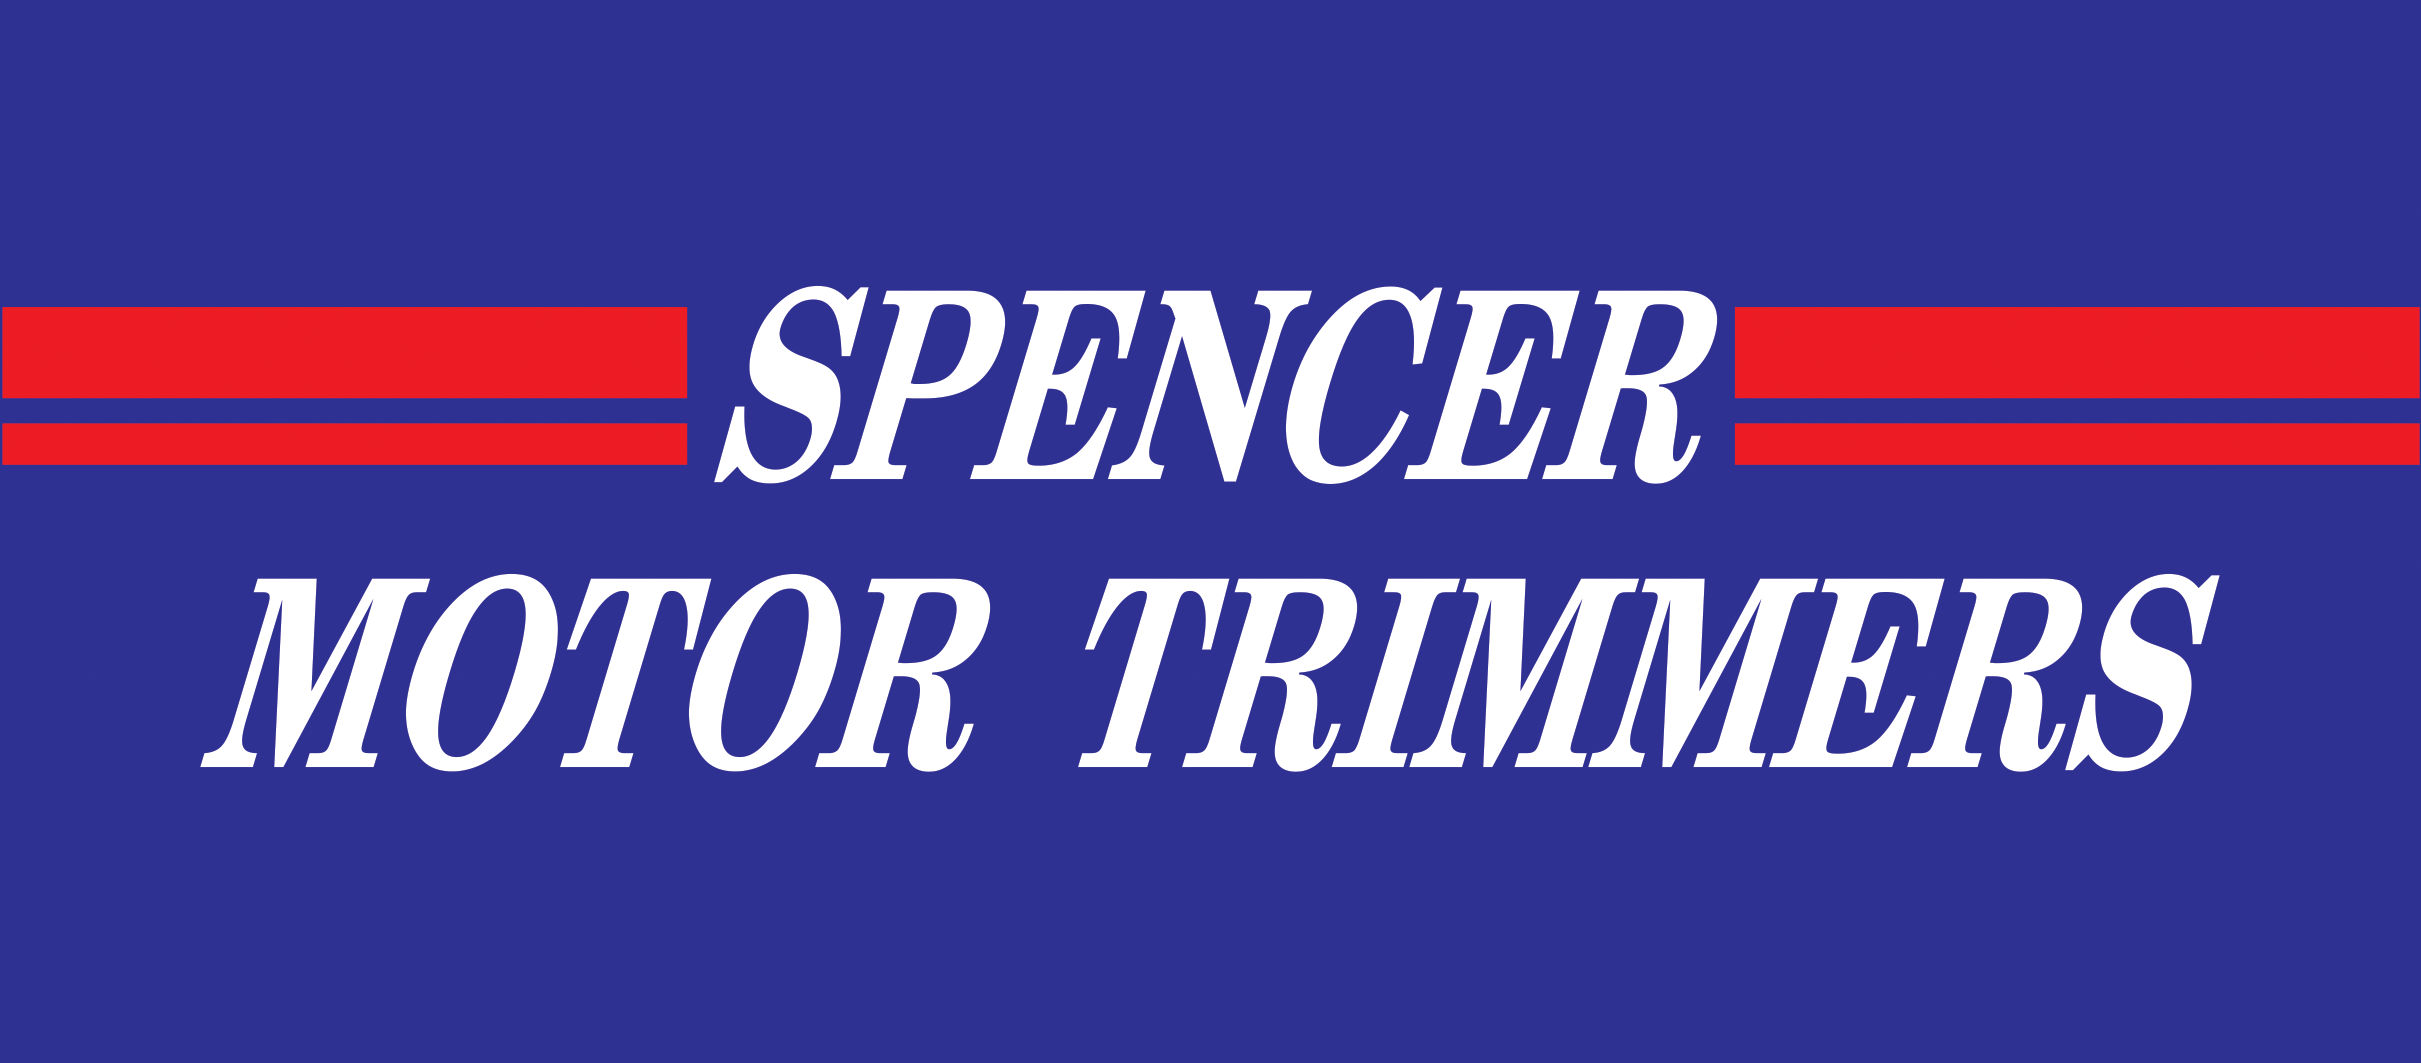 Spencer Motor Trimmers